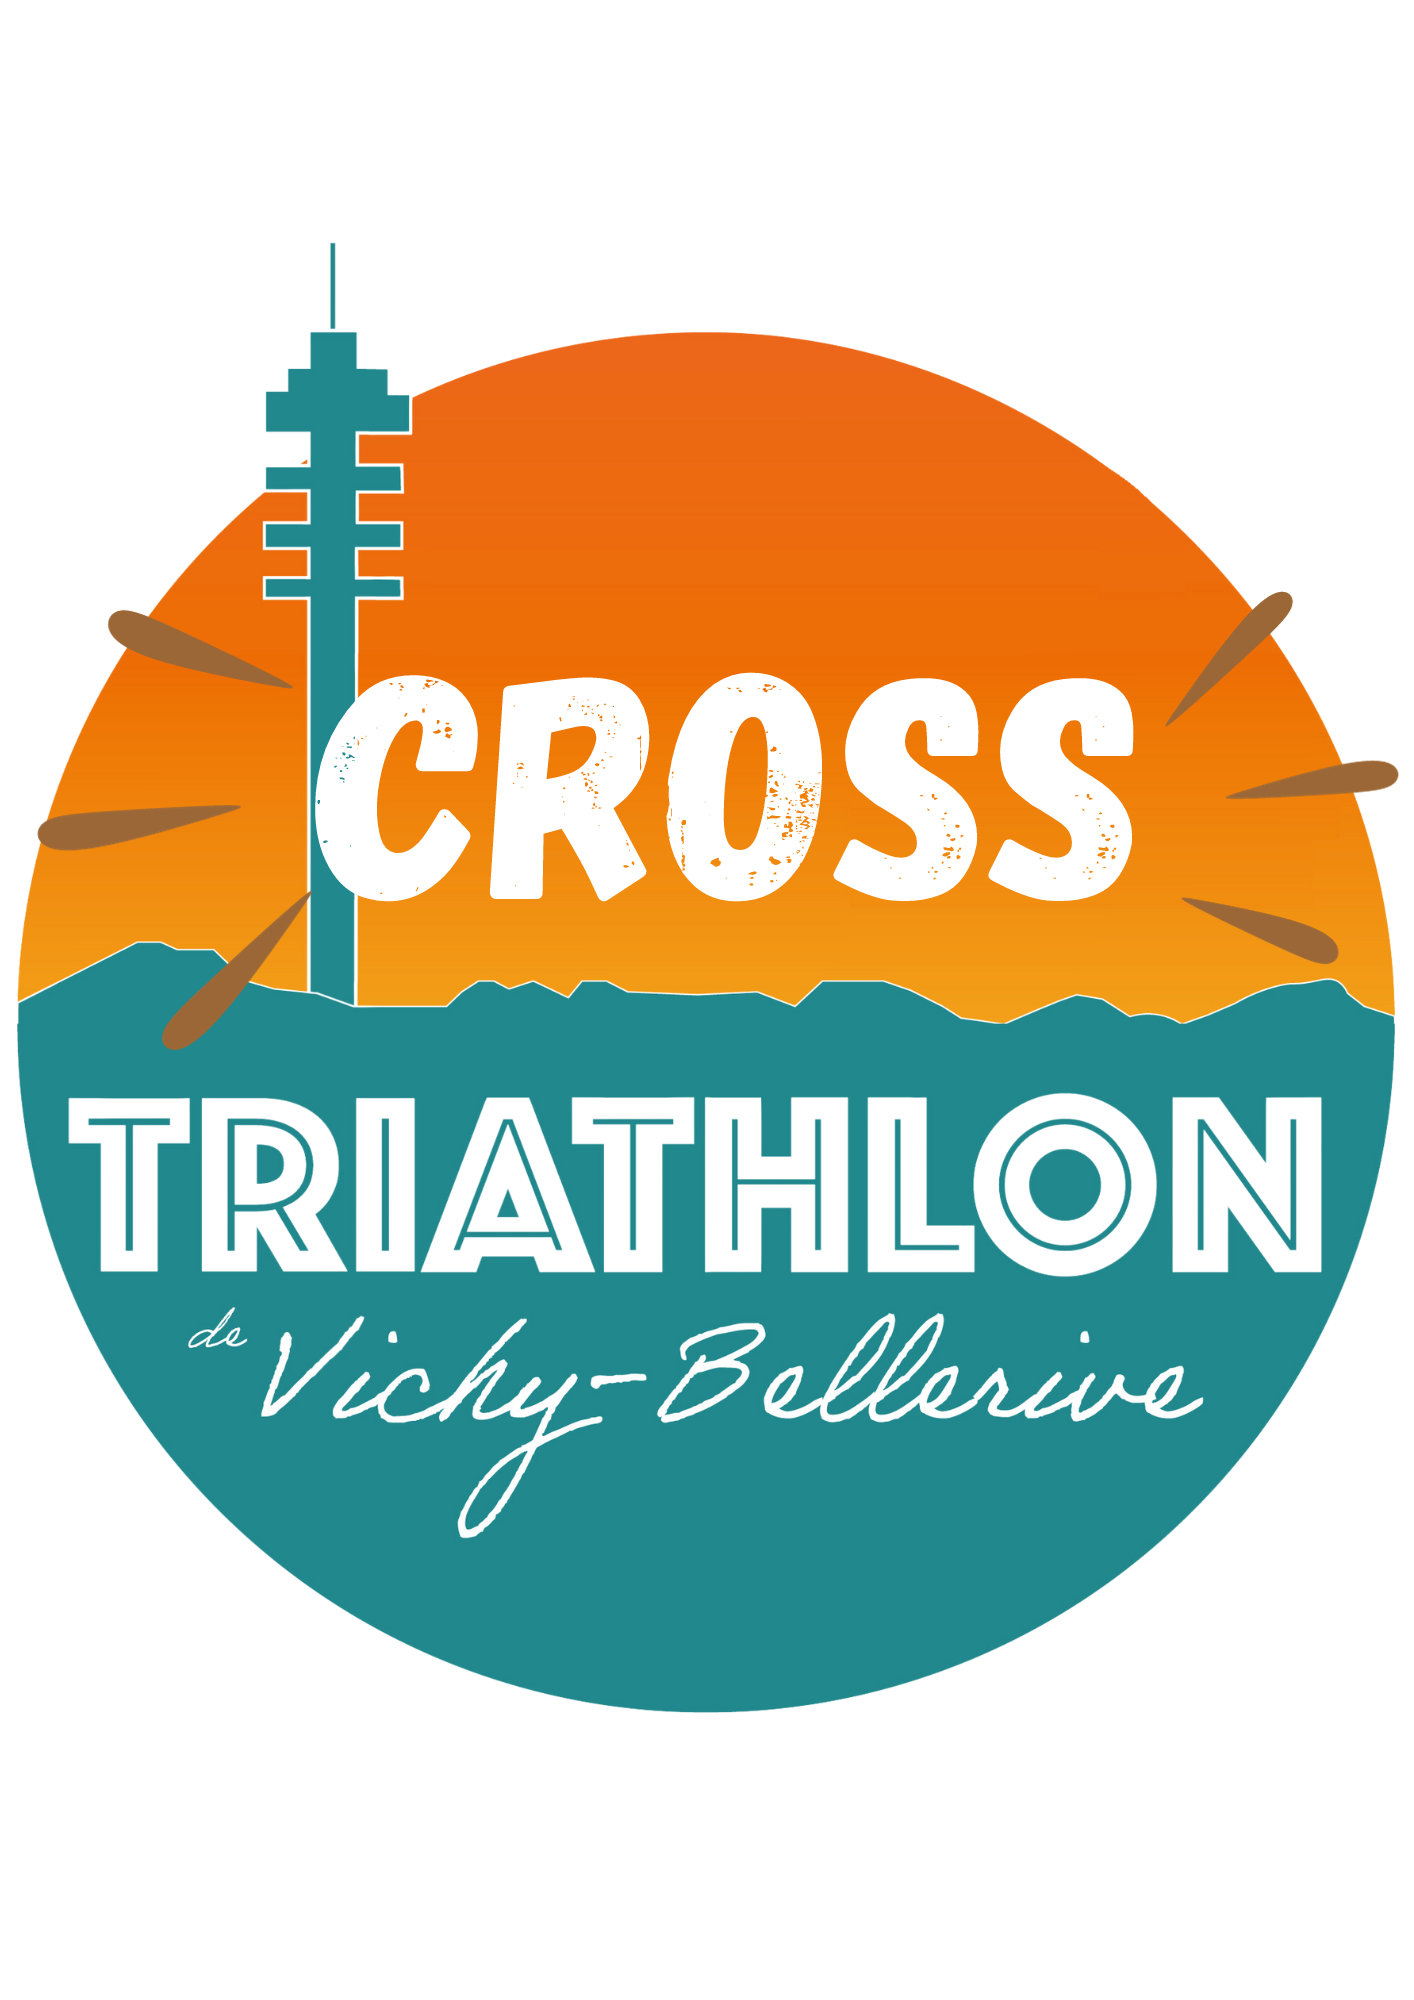 Image Cross triathlon de Vichy Bellerive (03)